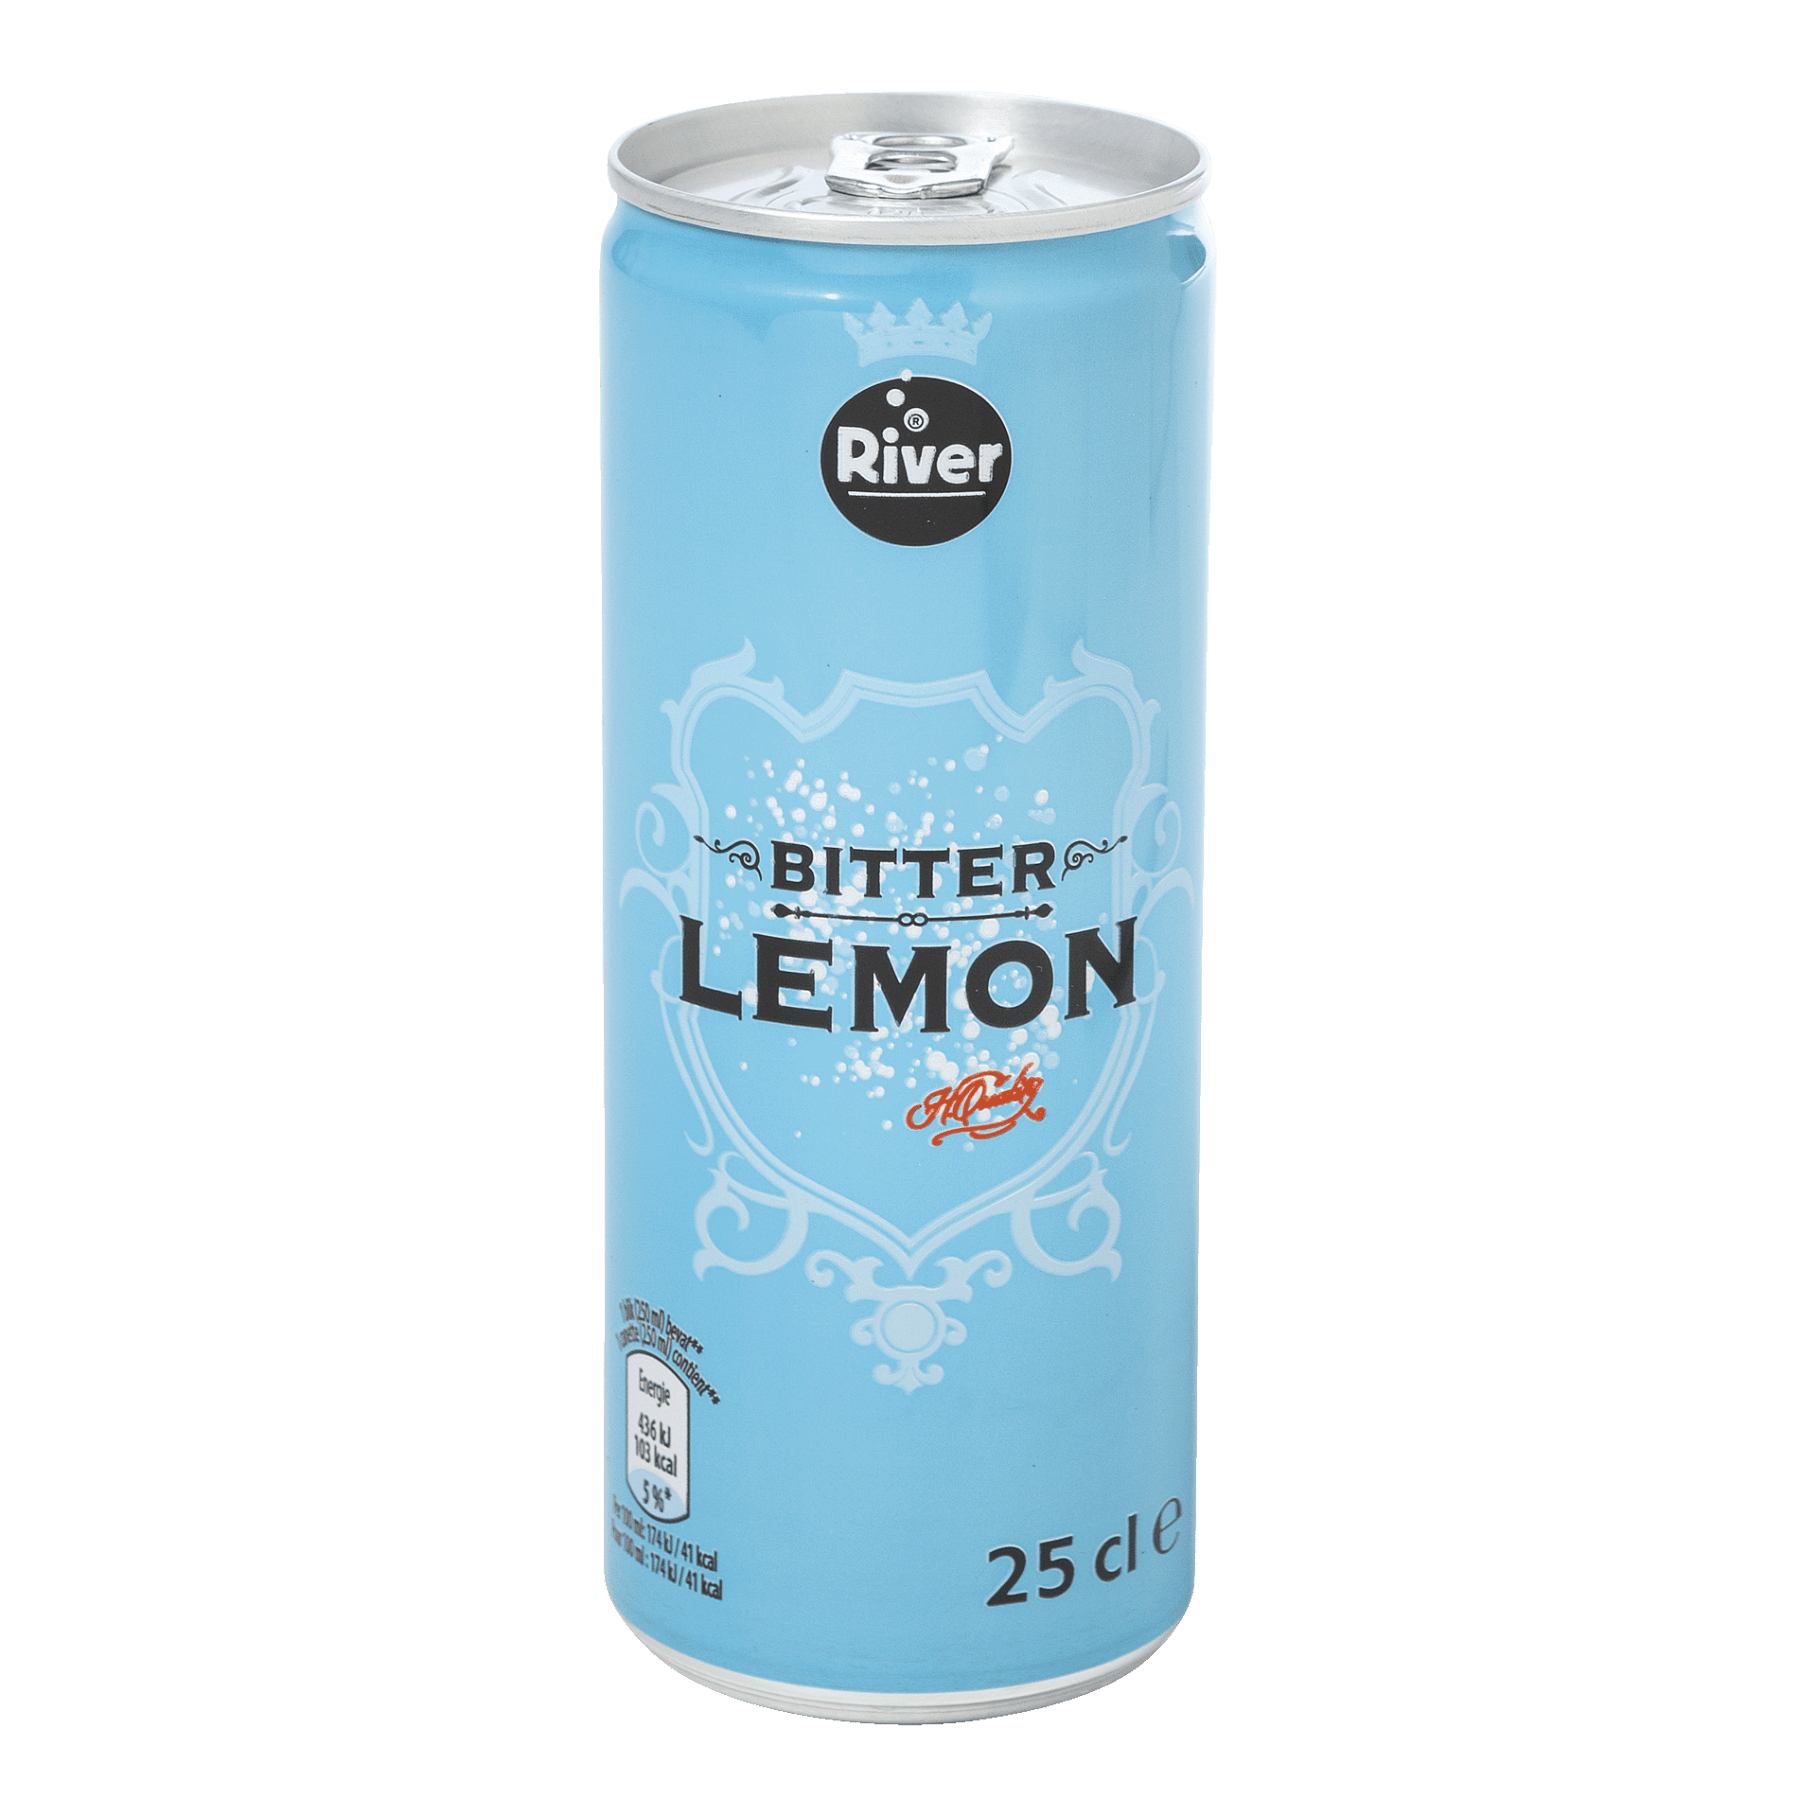 RIVER® Limonade bitter lemon, 8 pcs bon marché chez ALDI